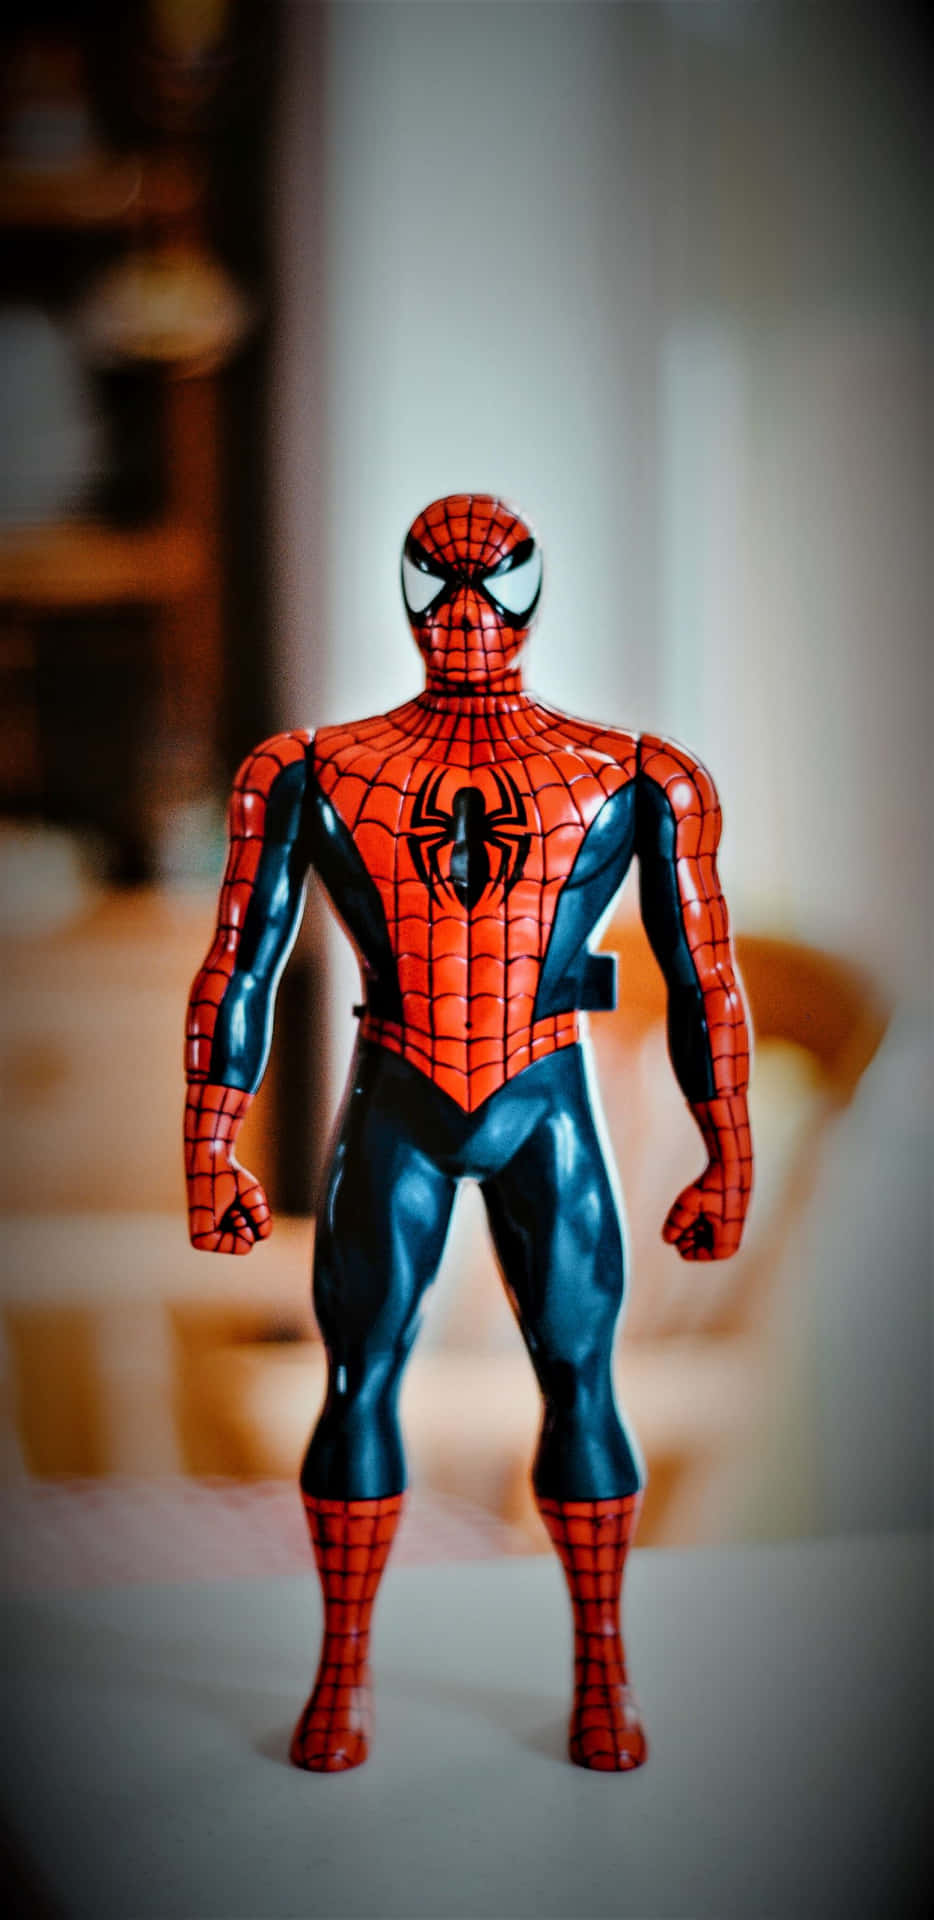 Pixel3xl Hintergrundbild: Spiderman-spielzeug Auf Einem Tisch